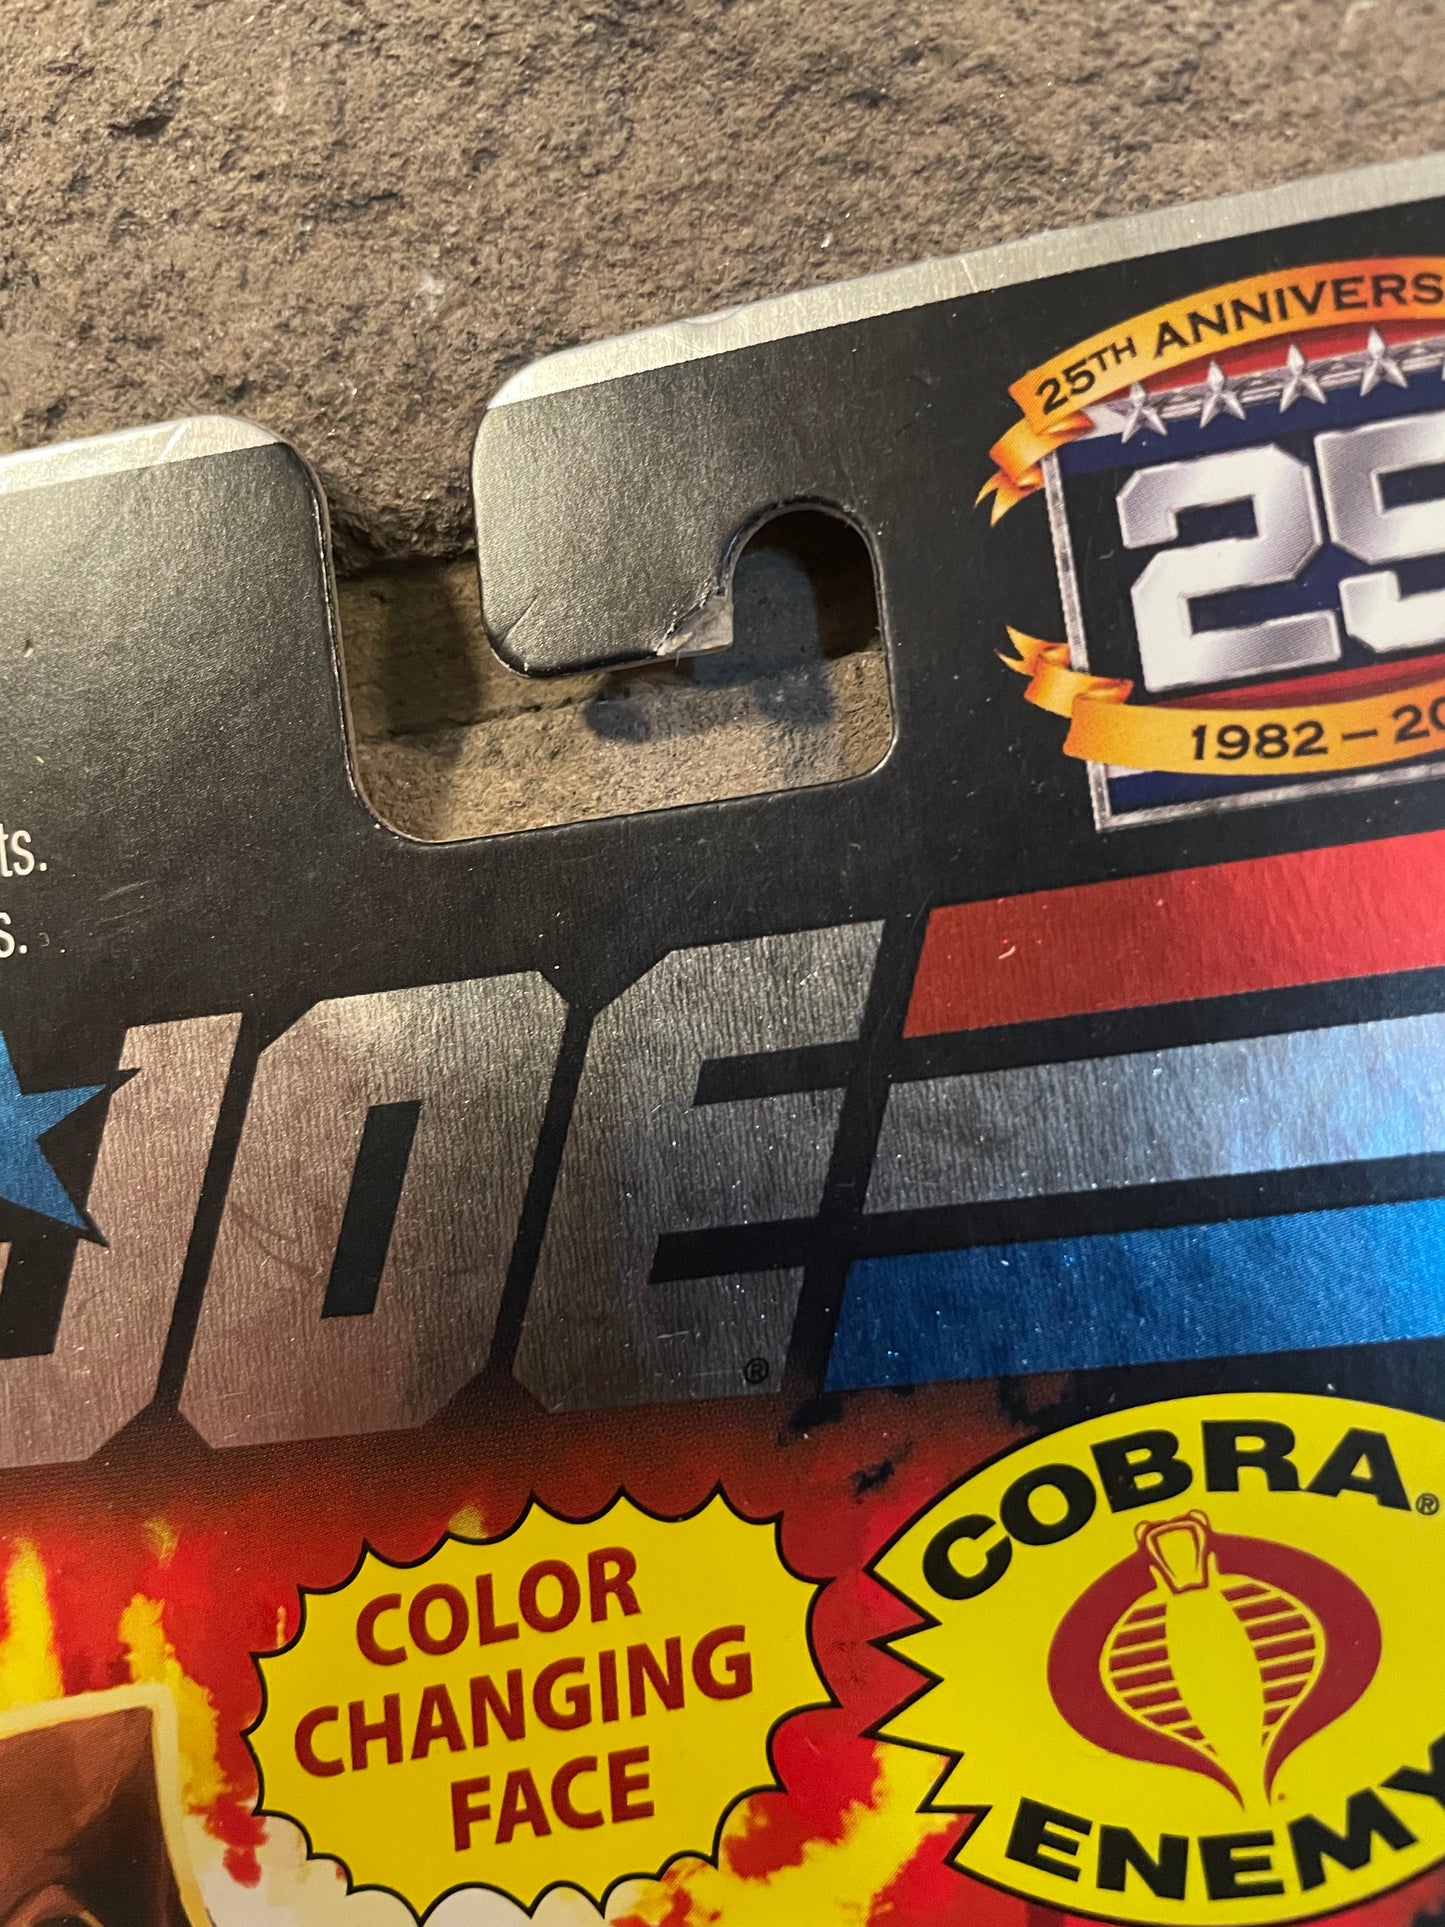 G.I. Joe 25th Anniversary Zartan Foil Care MOC